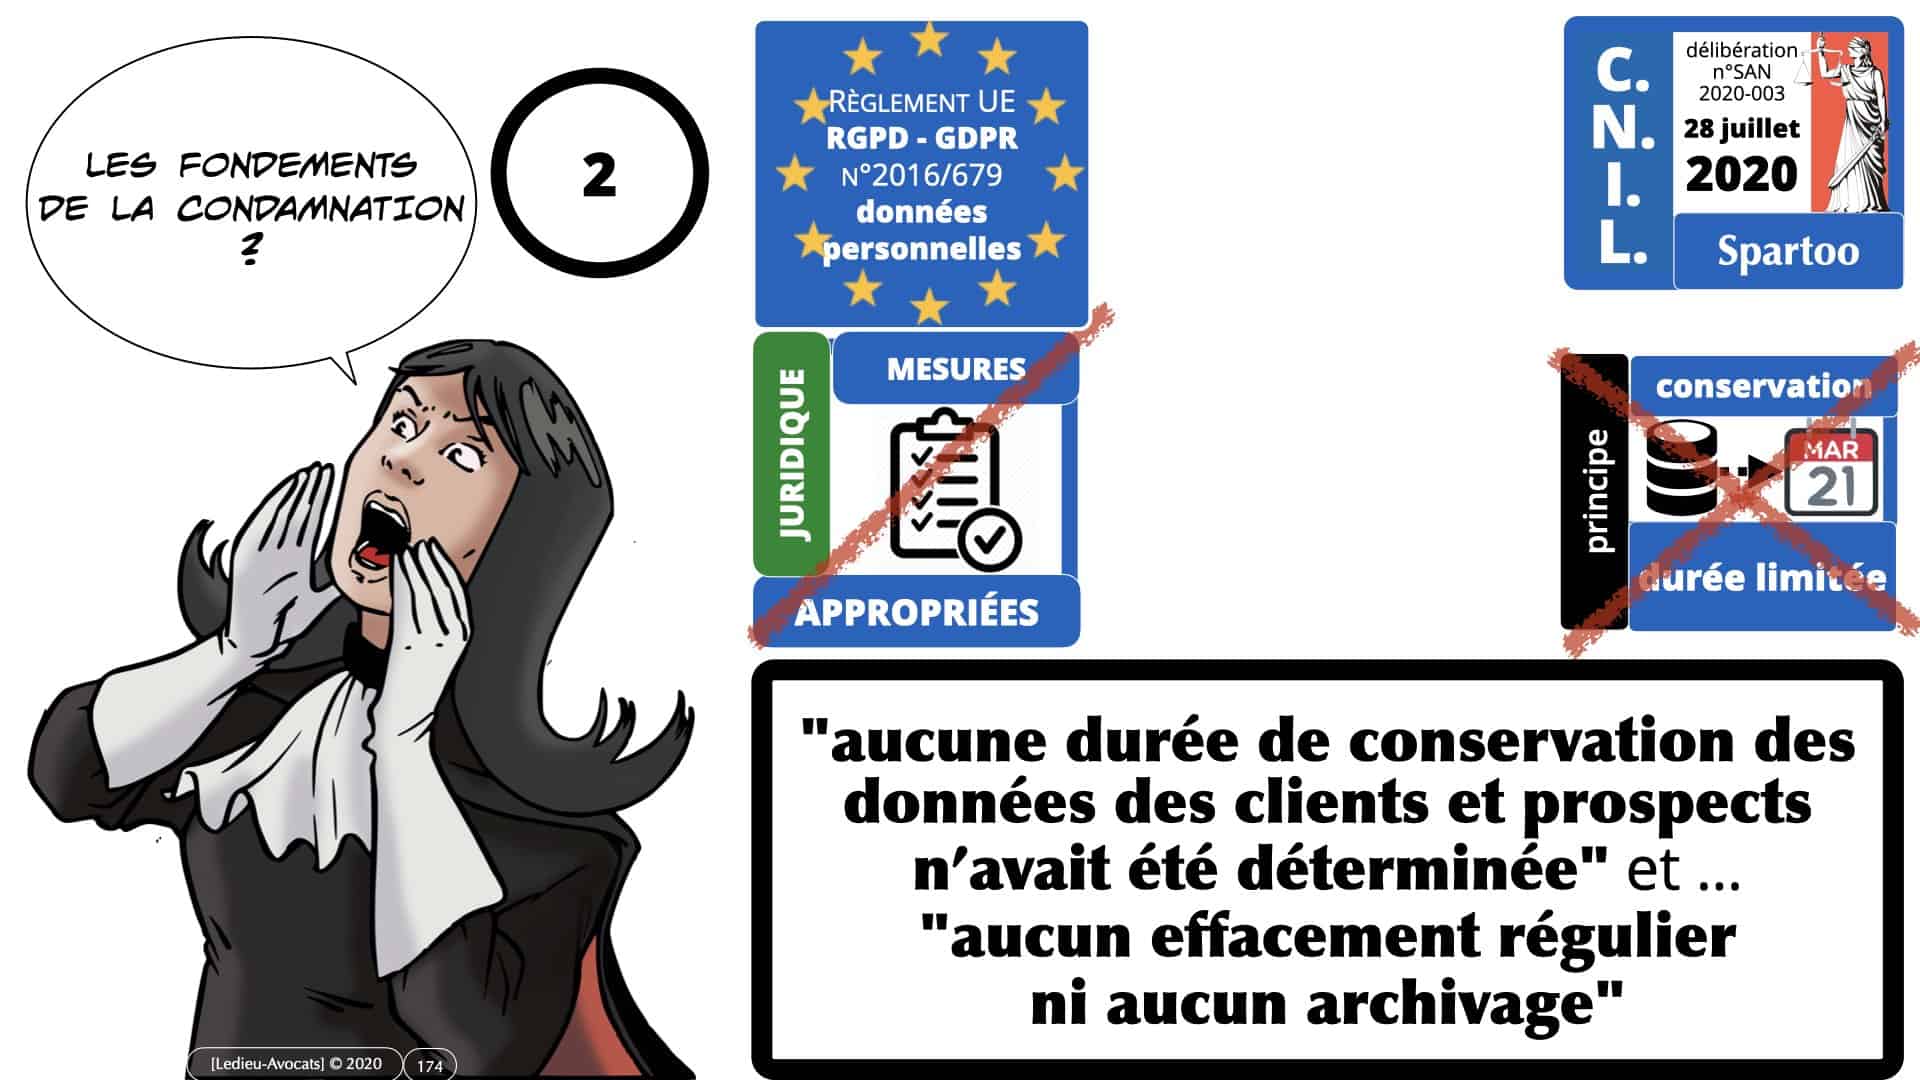 RGPD e-Privacy données personnelles jurisprudence formation Lamy Les Echos 10-02-2021 ©Ledieu-Avocats.174